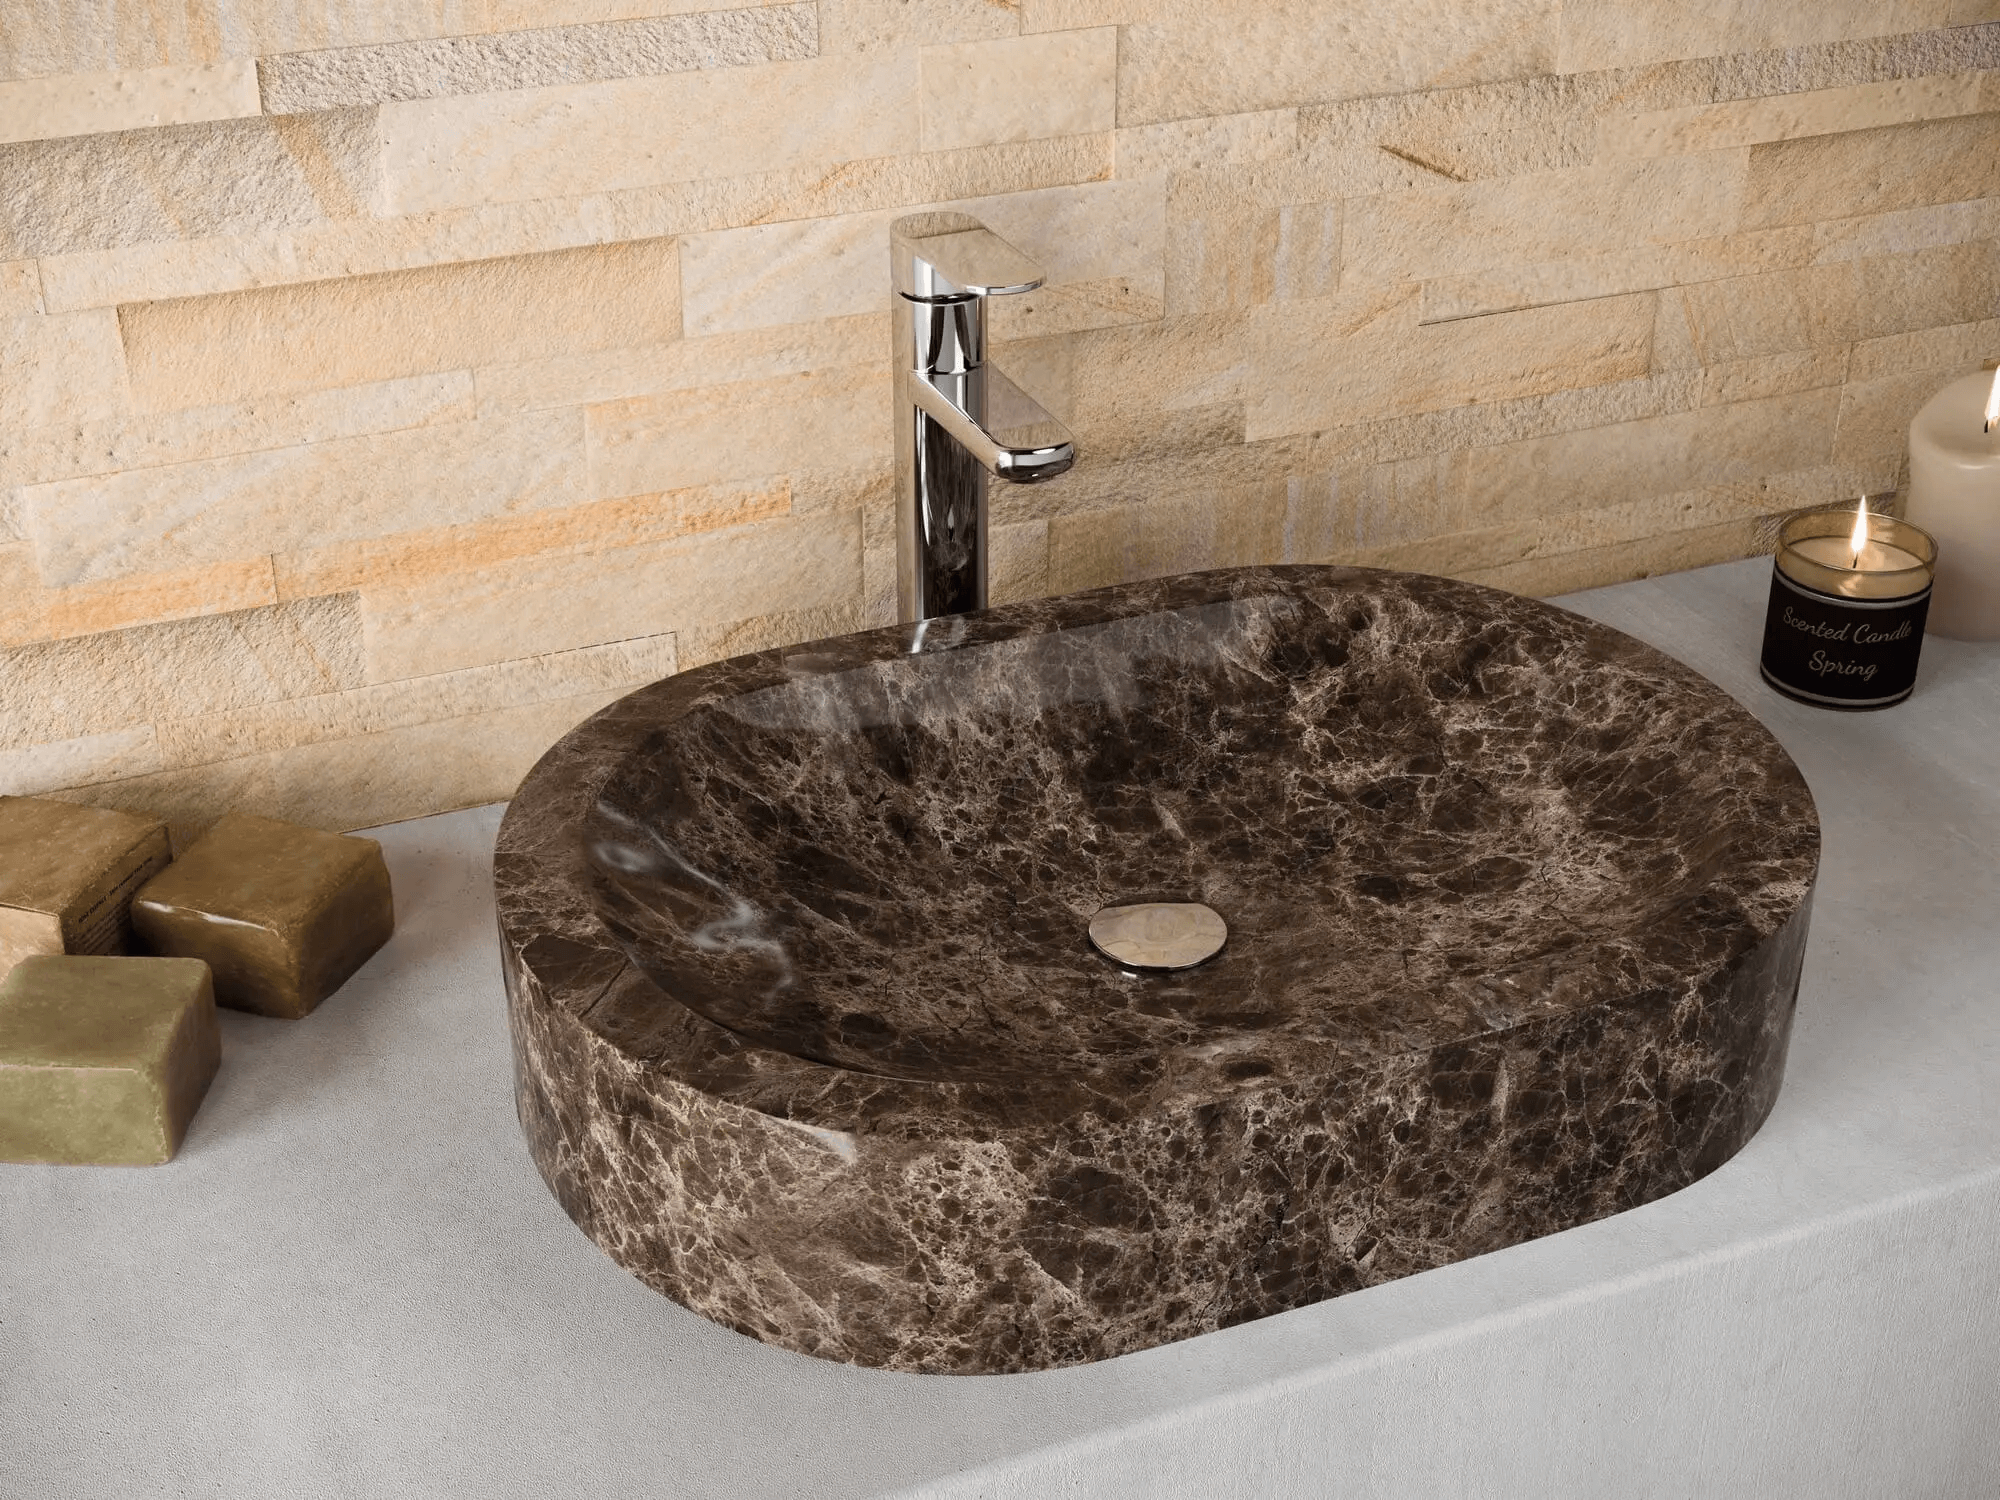 Lavabo de piedra natural sobre encimera - 5 increíbles lavabos sobre encimera que te enamorarán